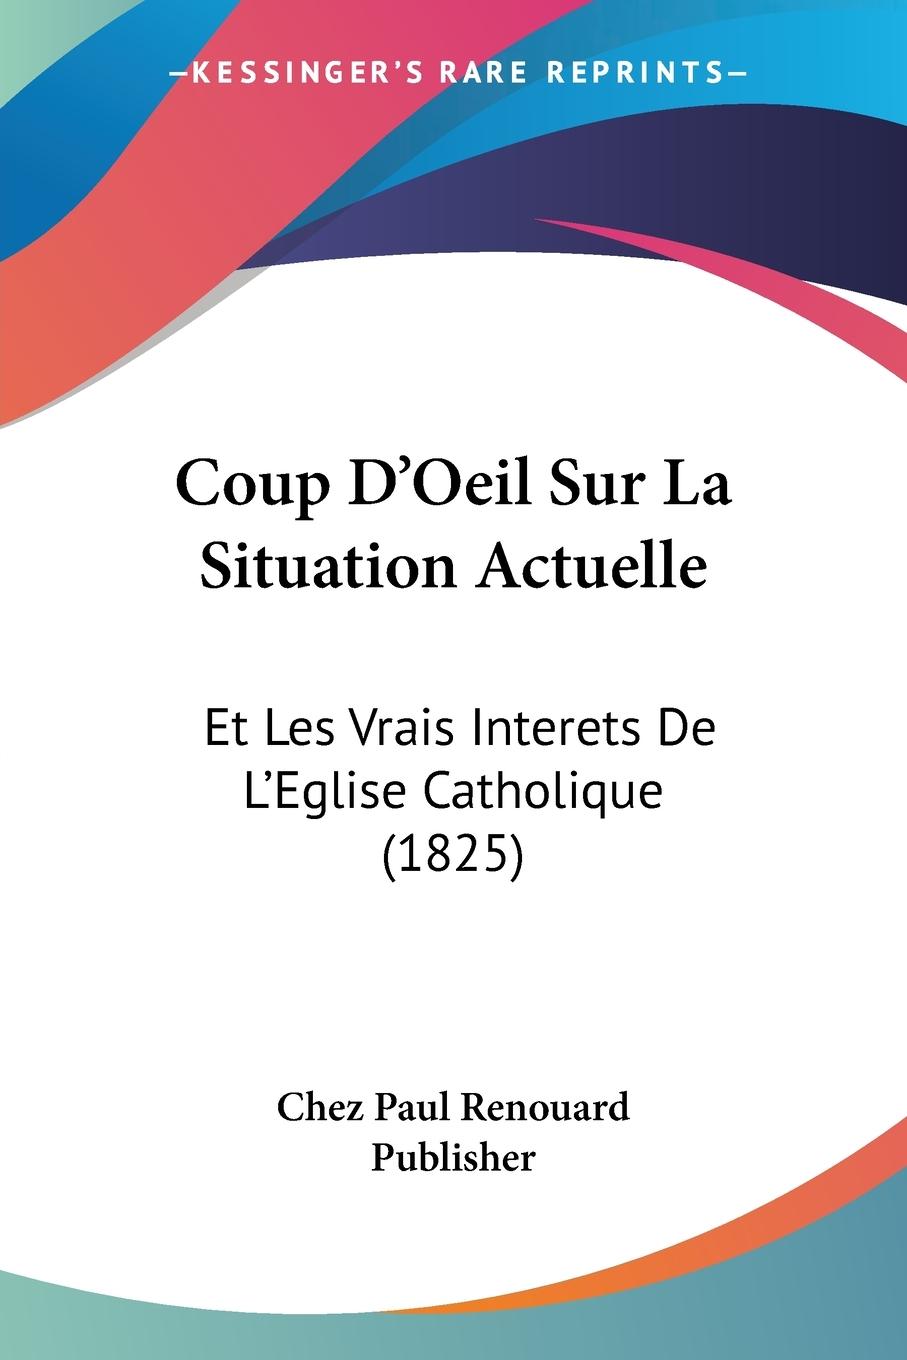 Coup D Oeil Sur La Situation Actuelle - Chez Paul Renouard Publisher